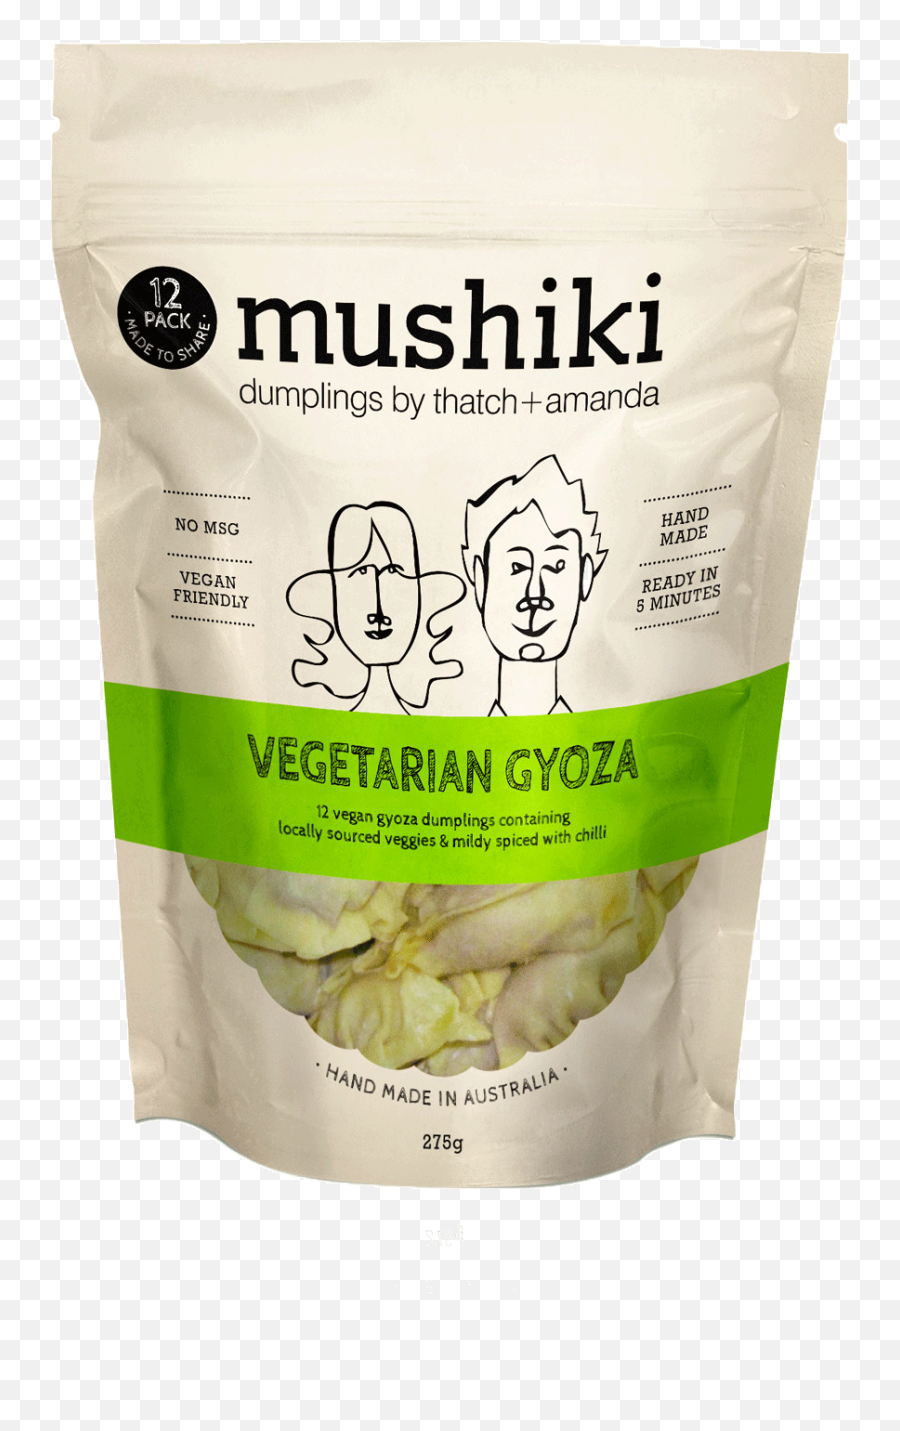 Products Mushiki - Free Range Png,Tofu Png